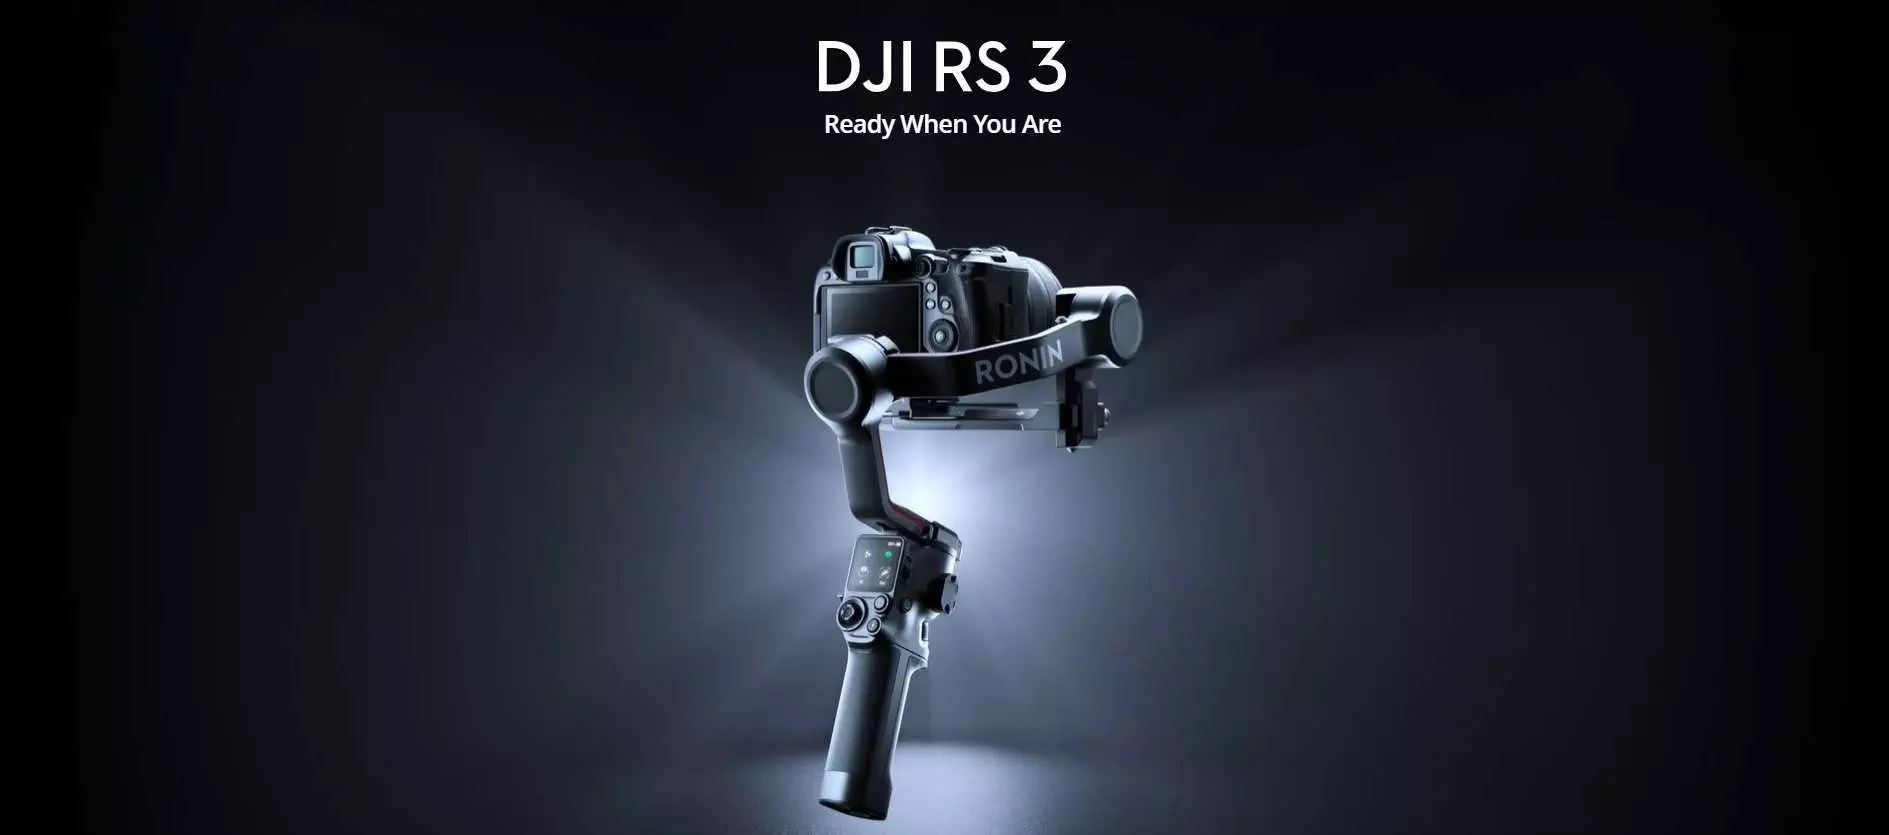 DJI RS 3 Gimbal Stabilizer